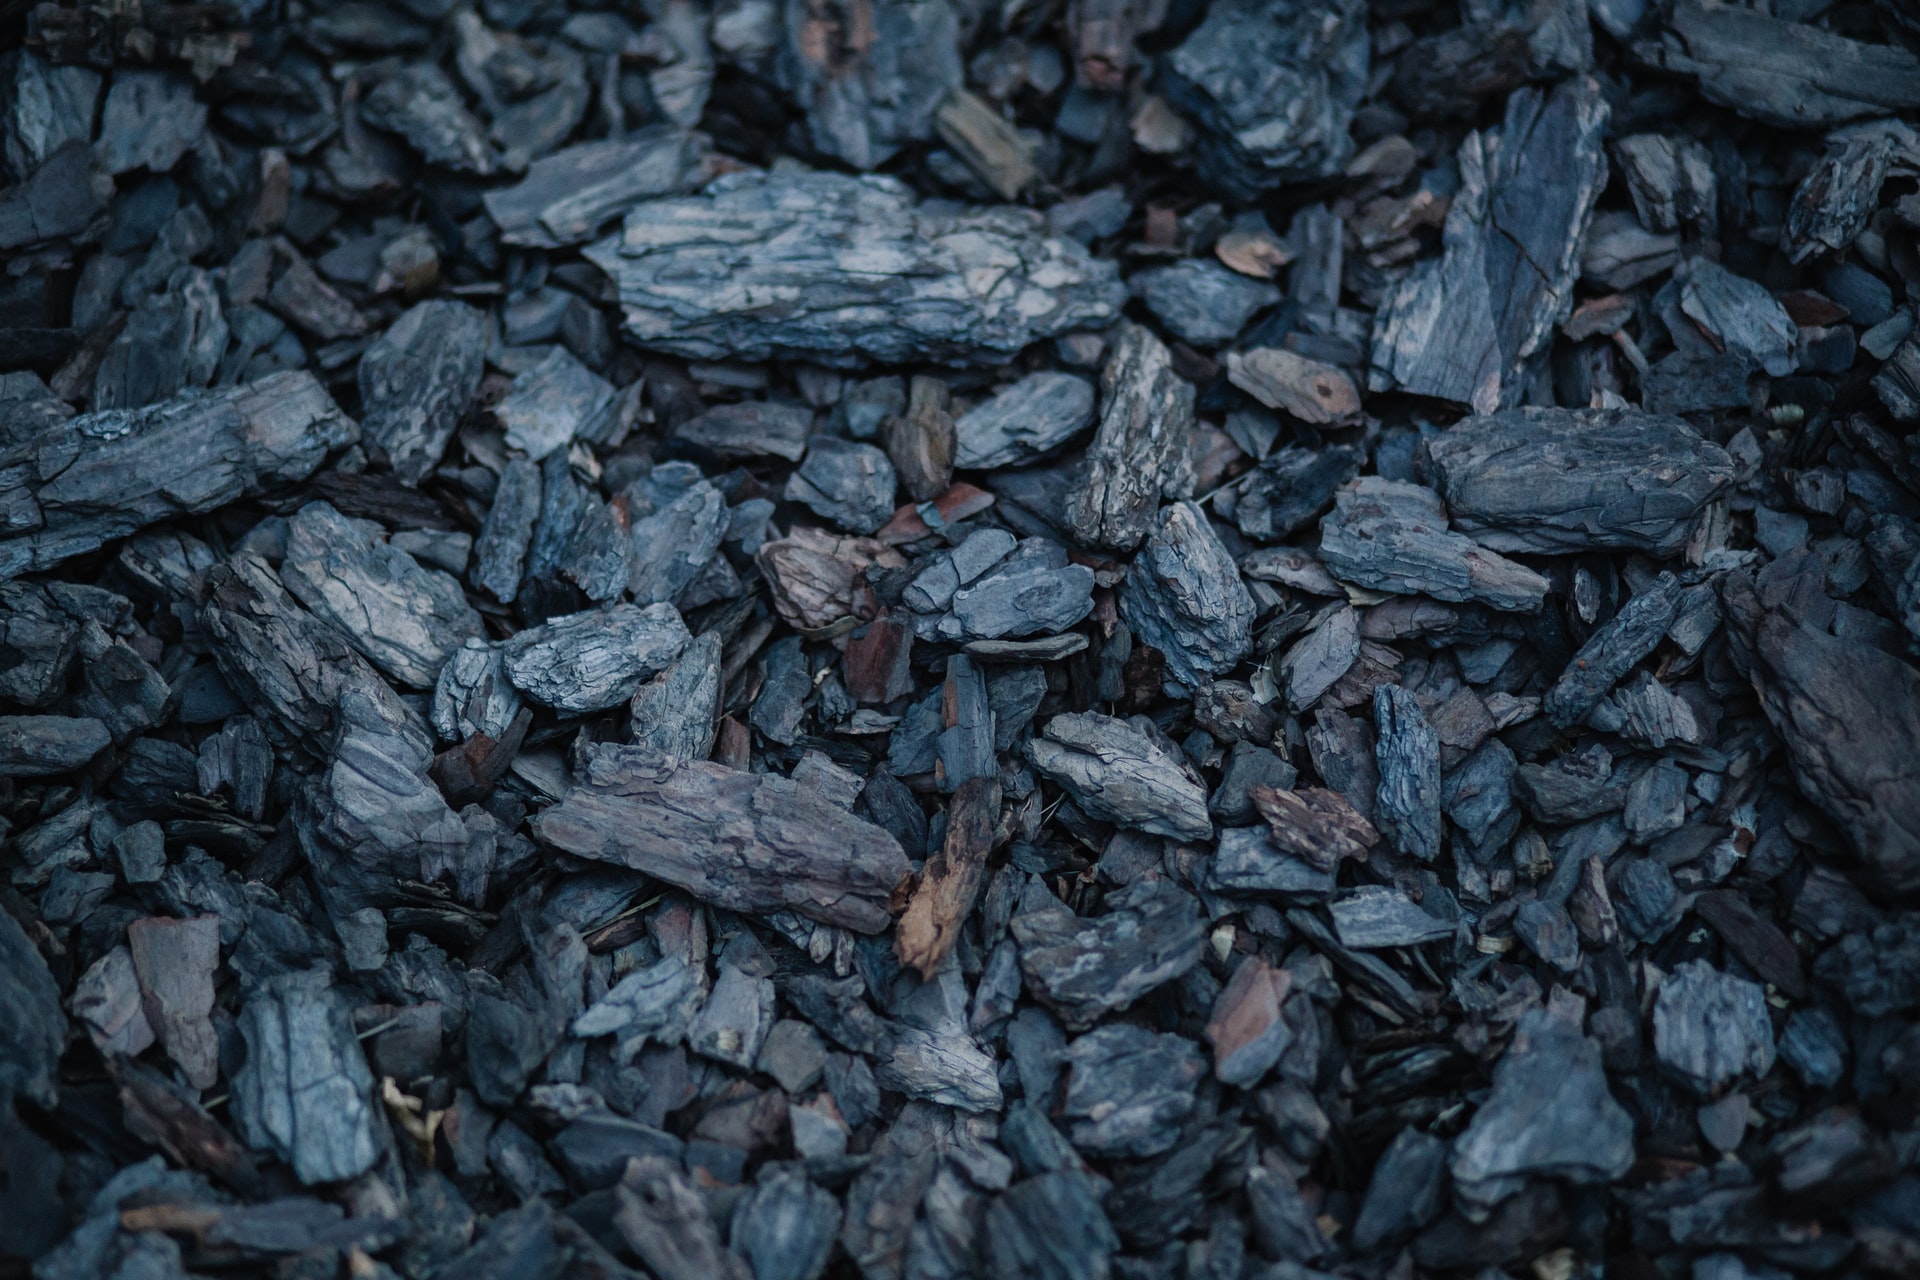 mined coal pile